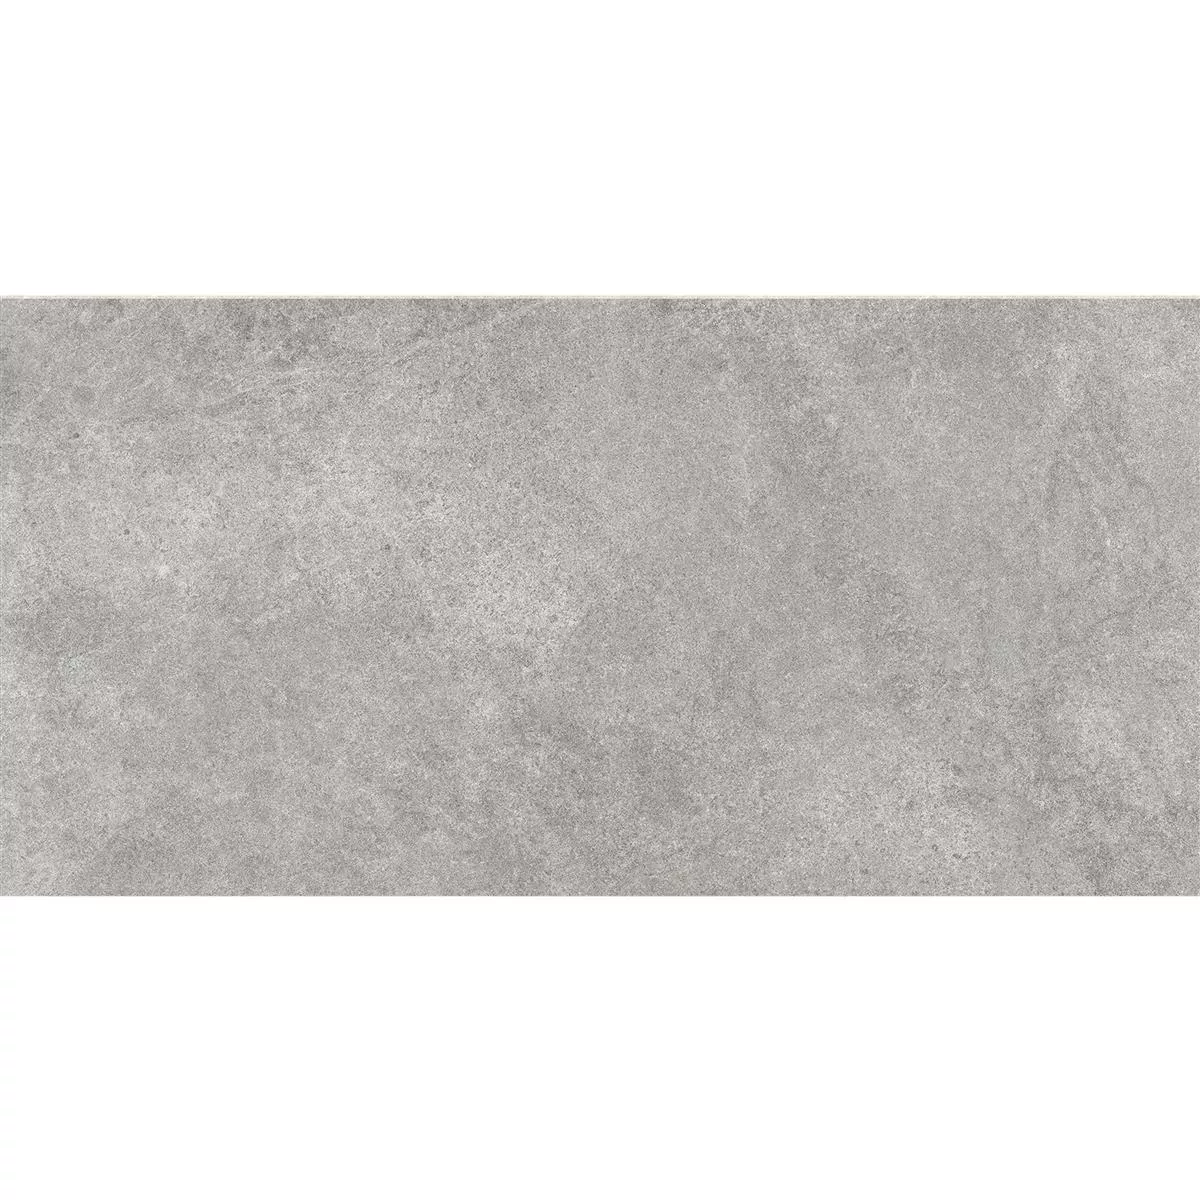 Πρότυπο Πλακάκια Δαπέδου Montana Άγυαλο Σκούρο Γκρι 30x60cm / R10B